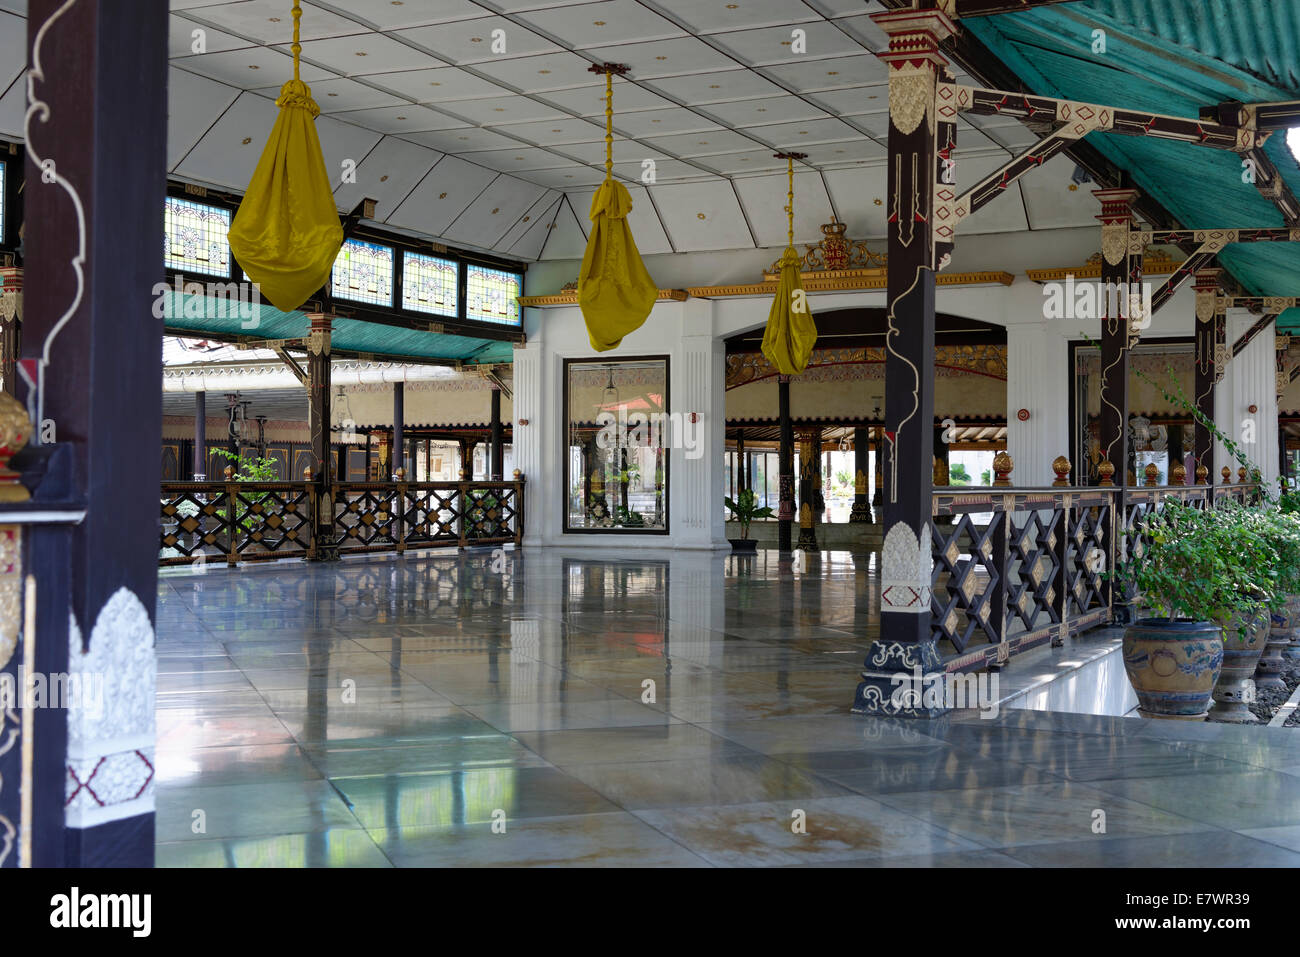 Salle des fêtes, Port de Bangsal manis, palais royal, kraton, Surakarta, java, Indonésie Banque D'Images